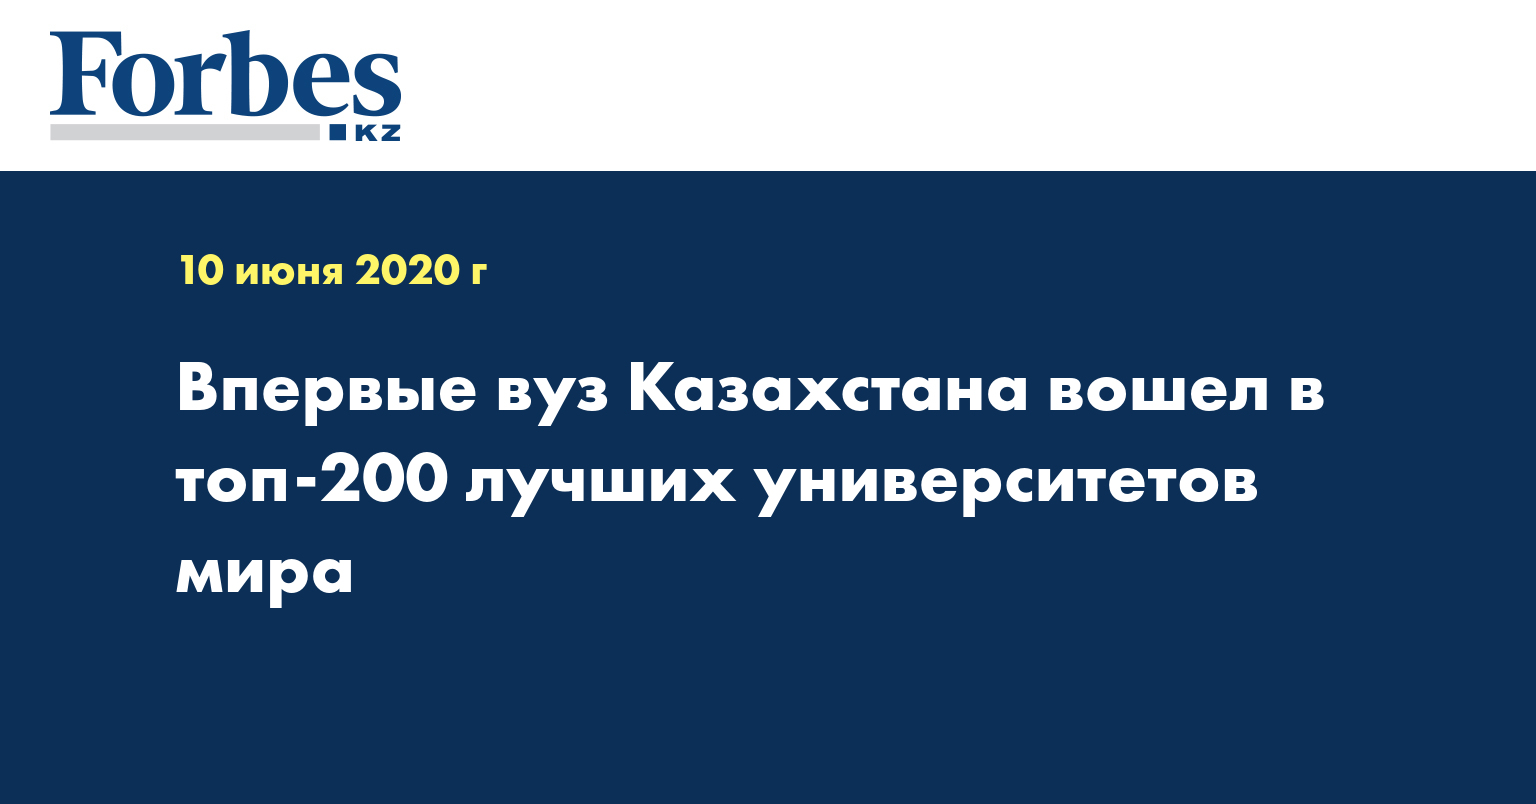 Впервые вуз Казахстана вошел в топ-200 лучших университетов мира